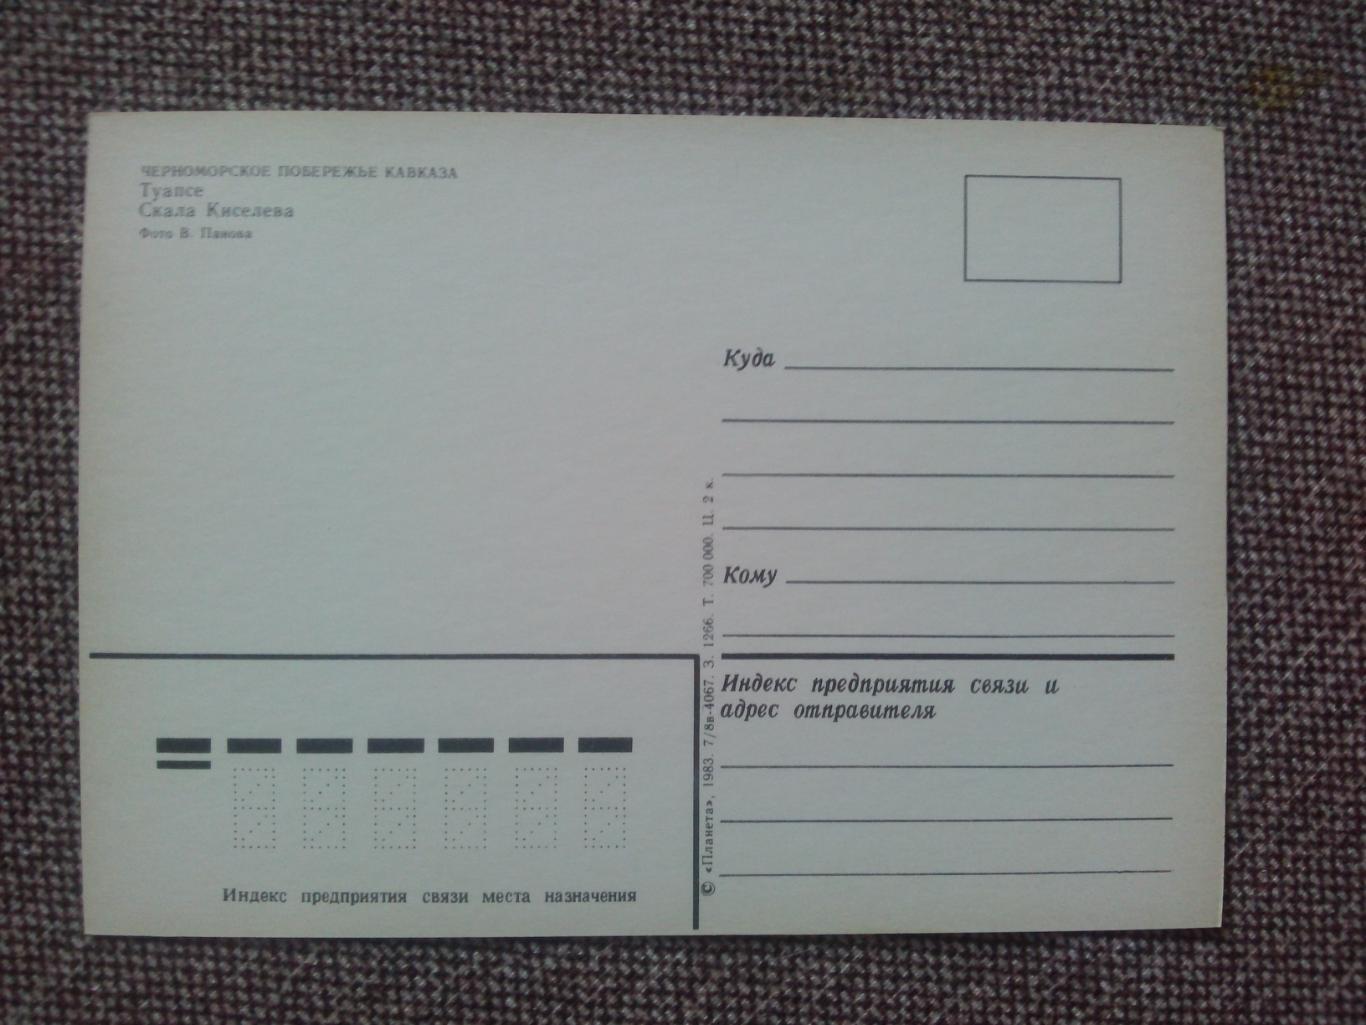 Черноморское побережье Кавказа : Туапсе Скала Киселева 1983 г. почтовая открытка 1